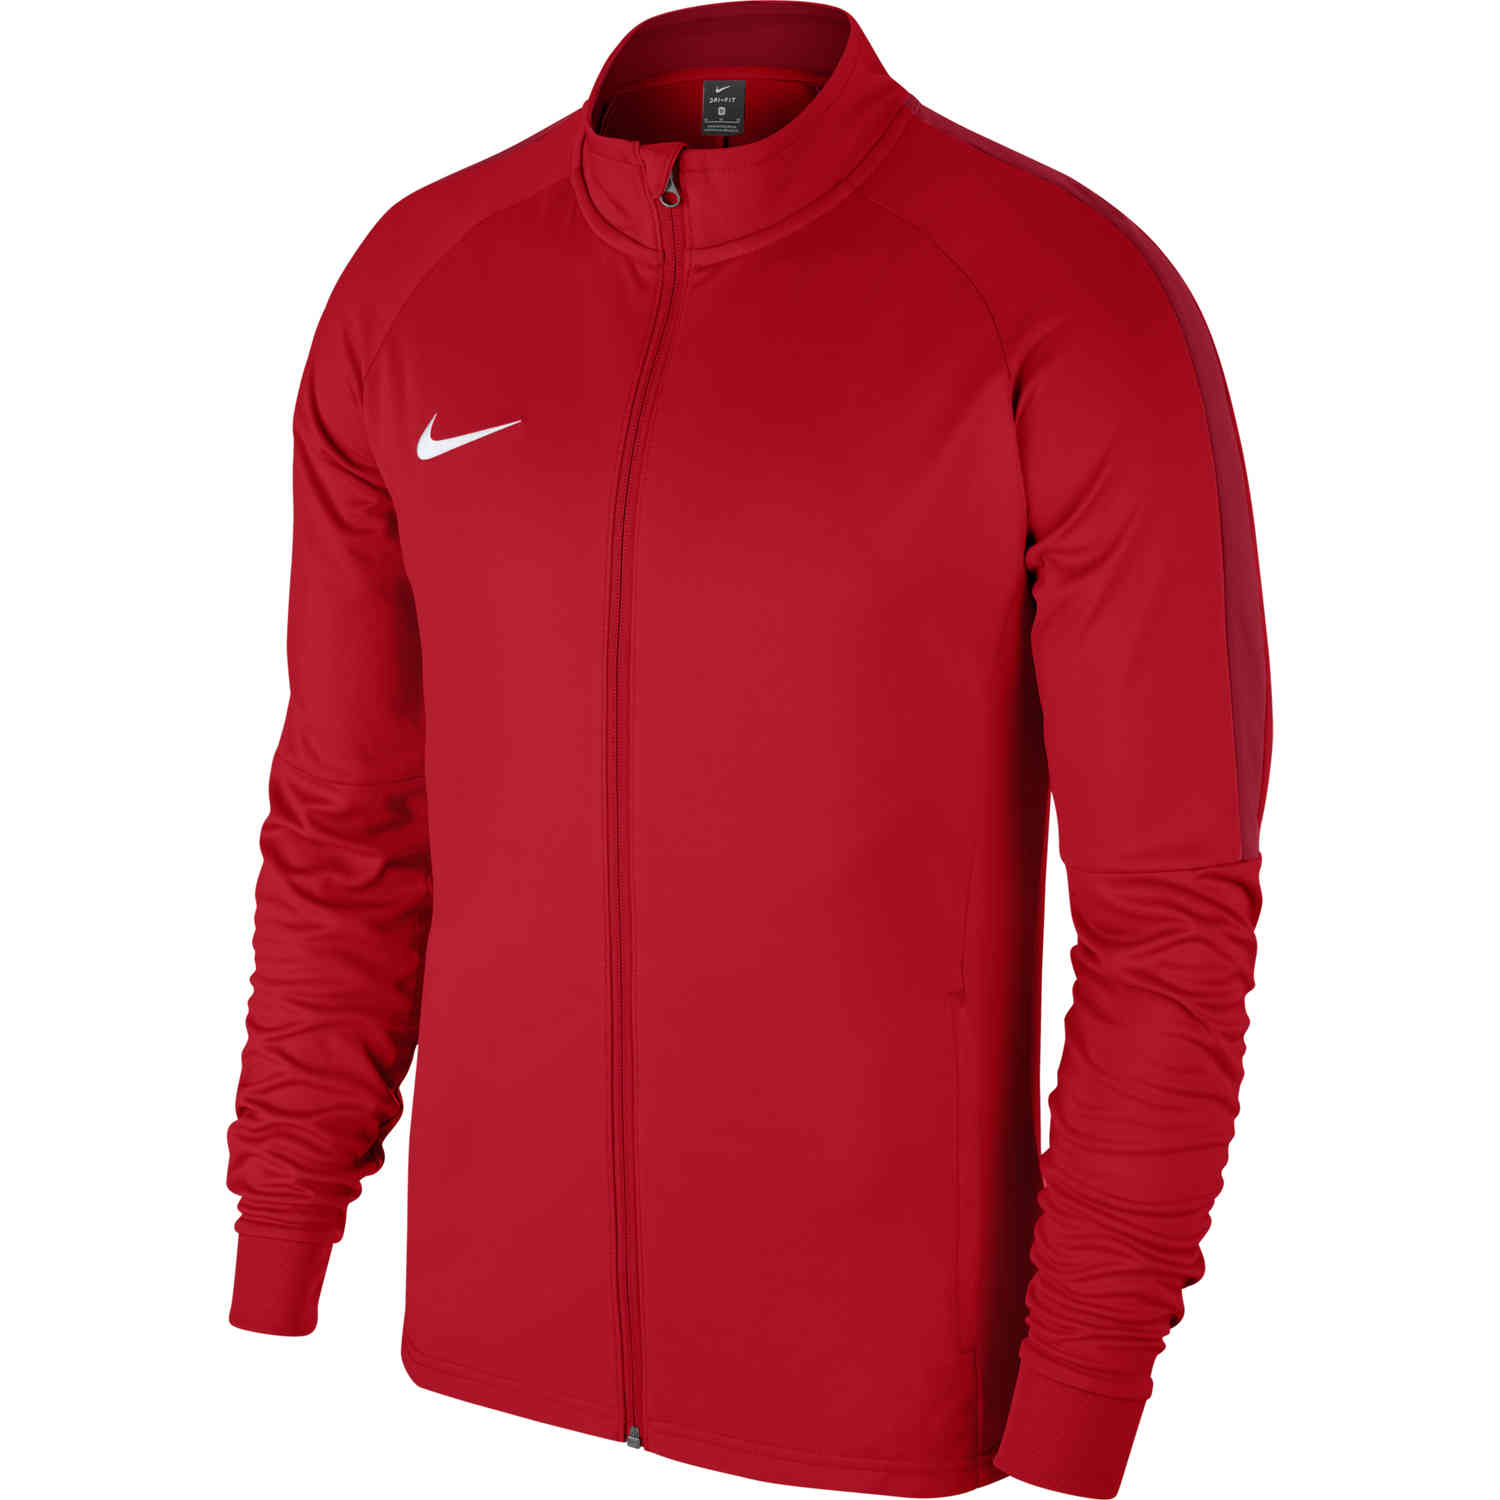 Nike Academy18 Track Jacket - University Red - SoccerPro